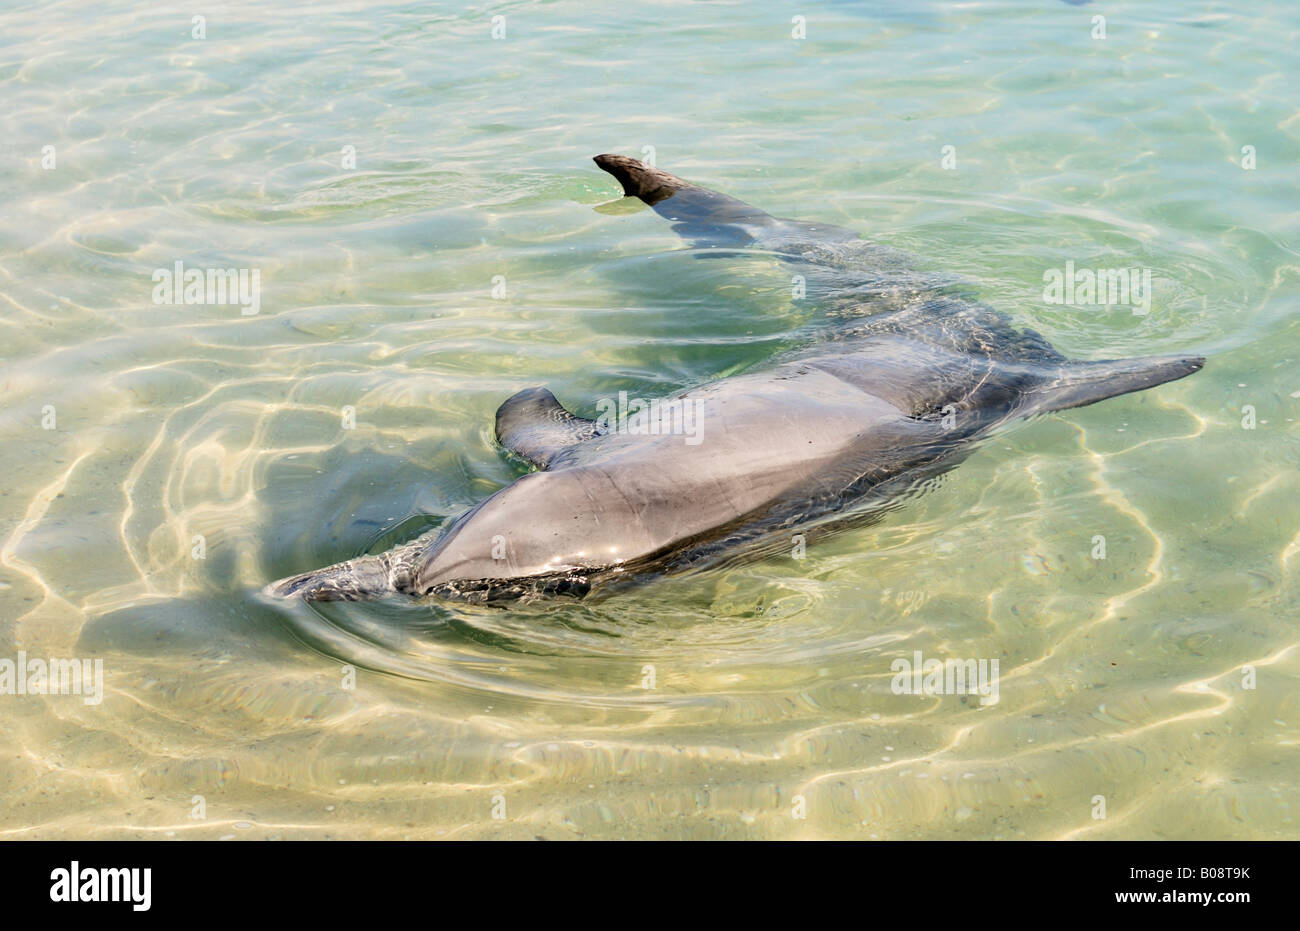 Indo-pacifico delfino maggiore (Tursiops aduncus) giocando in acque poco profonde, Monkey Mia, Shark Bay, Australia occidentale, Australia Foto Stock